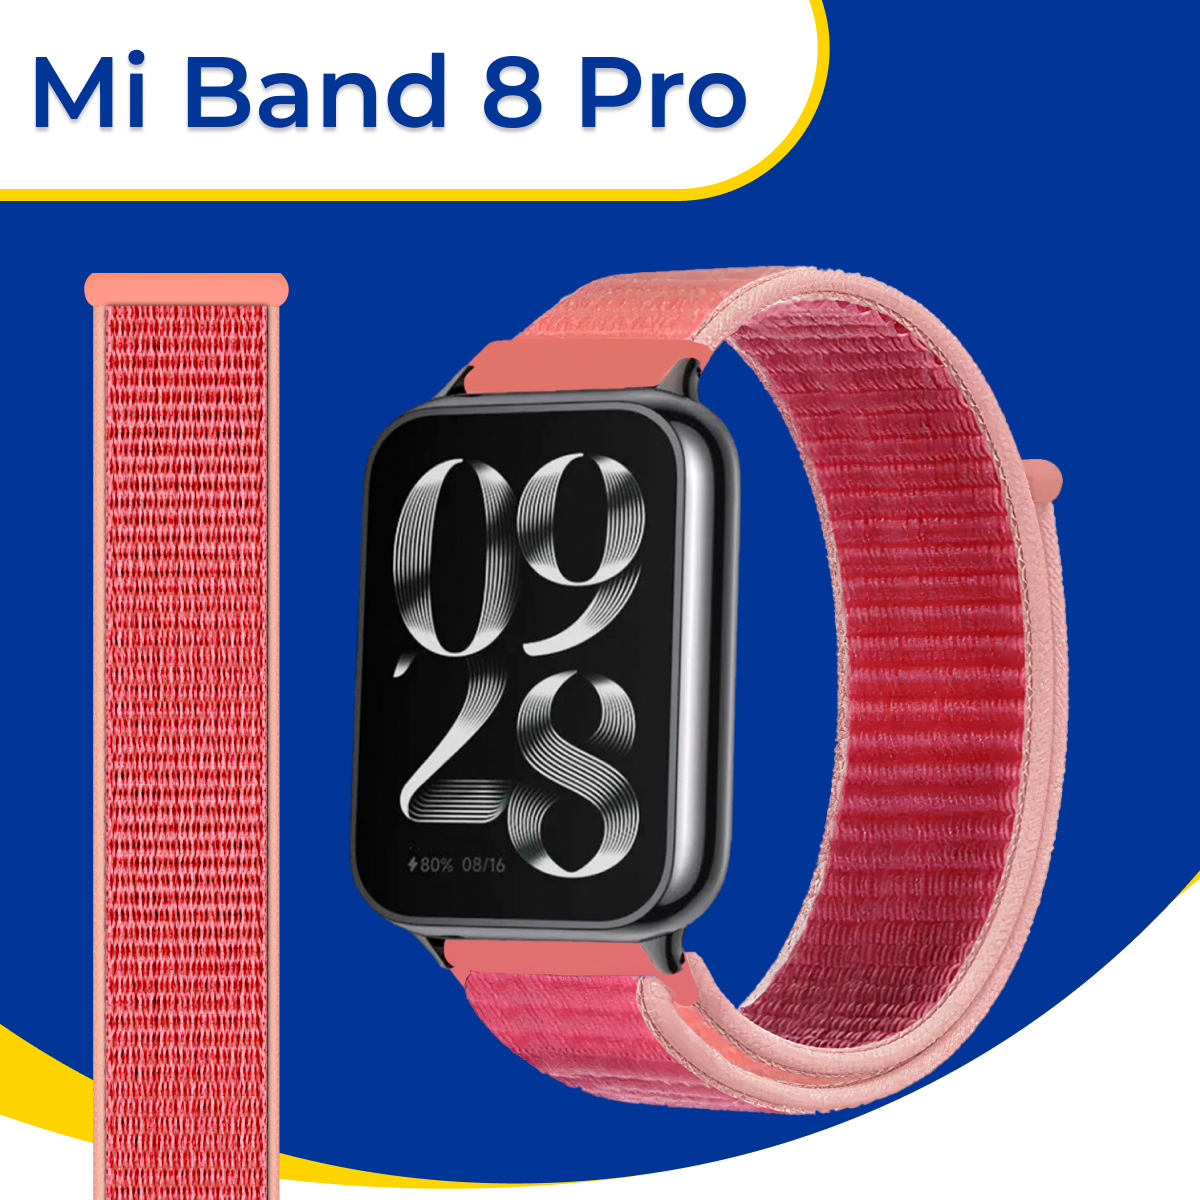 Нейлоновый ремешок для умных смарт часов Xiaomi Mi Band 8 Pro / Сменный спортивный браслет для фитнес трекера Сяоми Ми Бэнд 8 Про / Малиновый